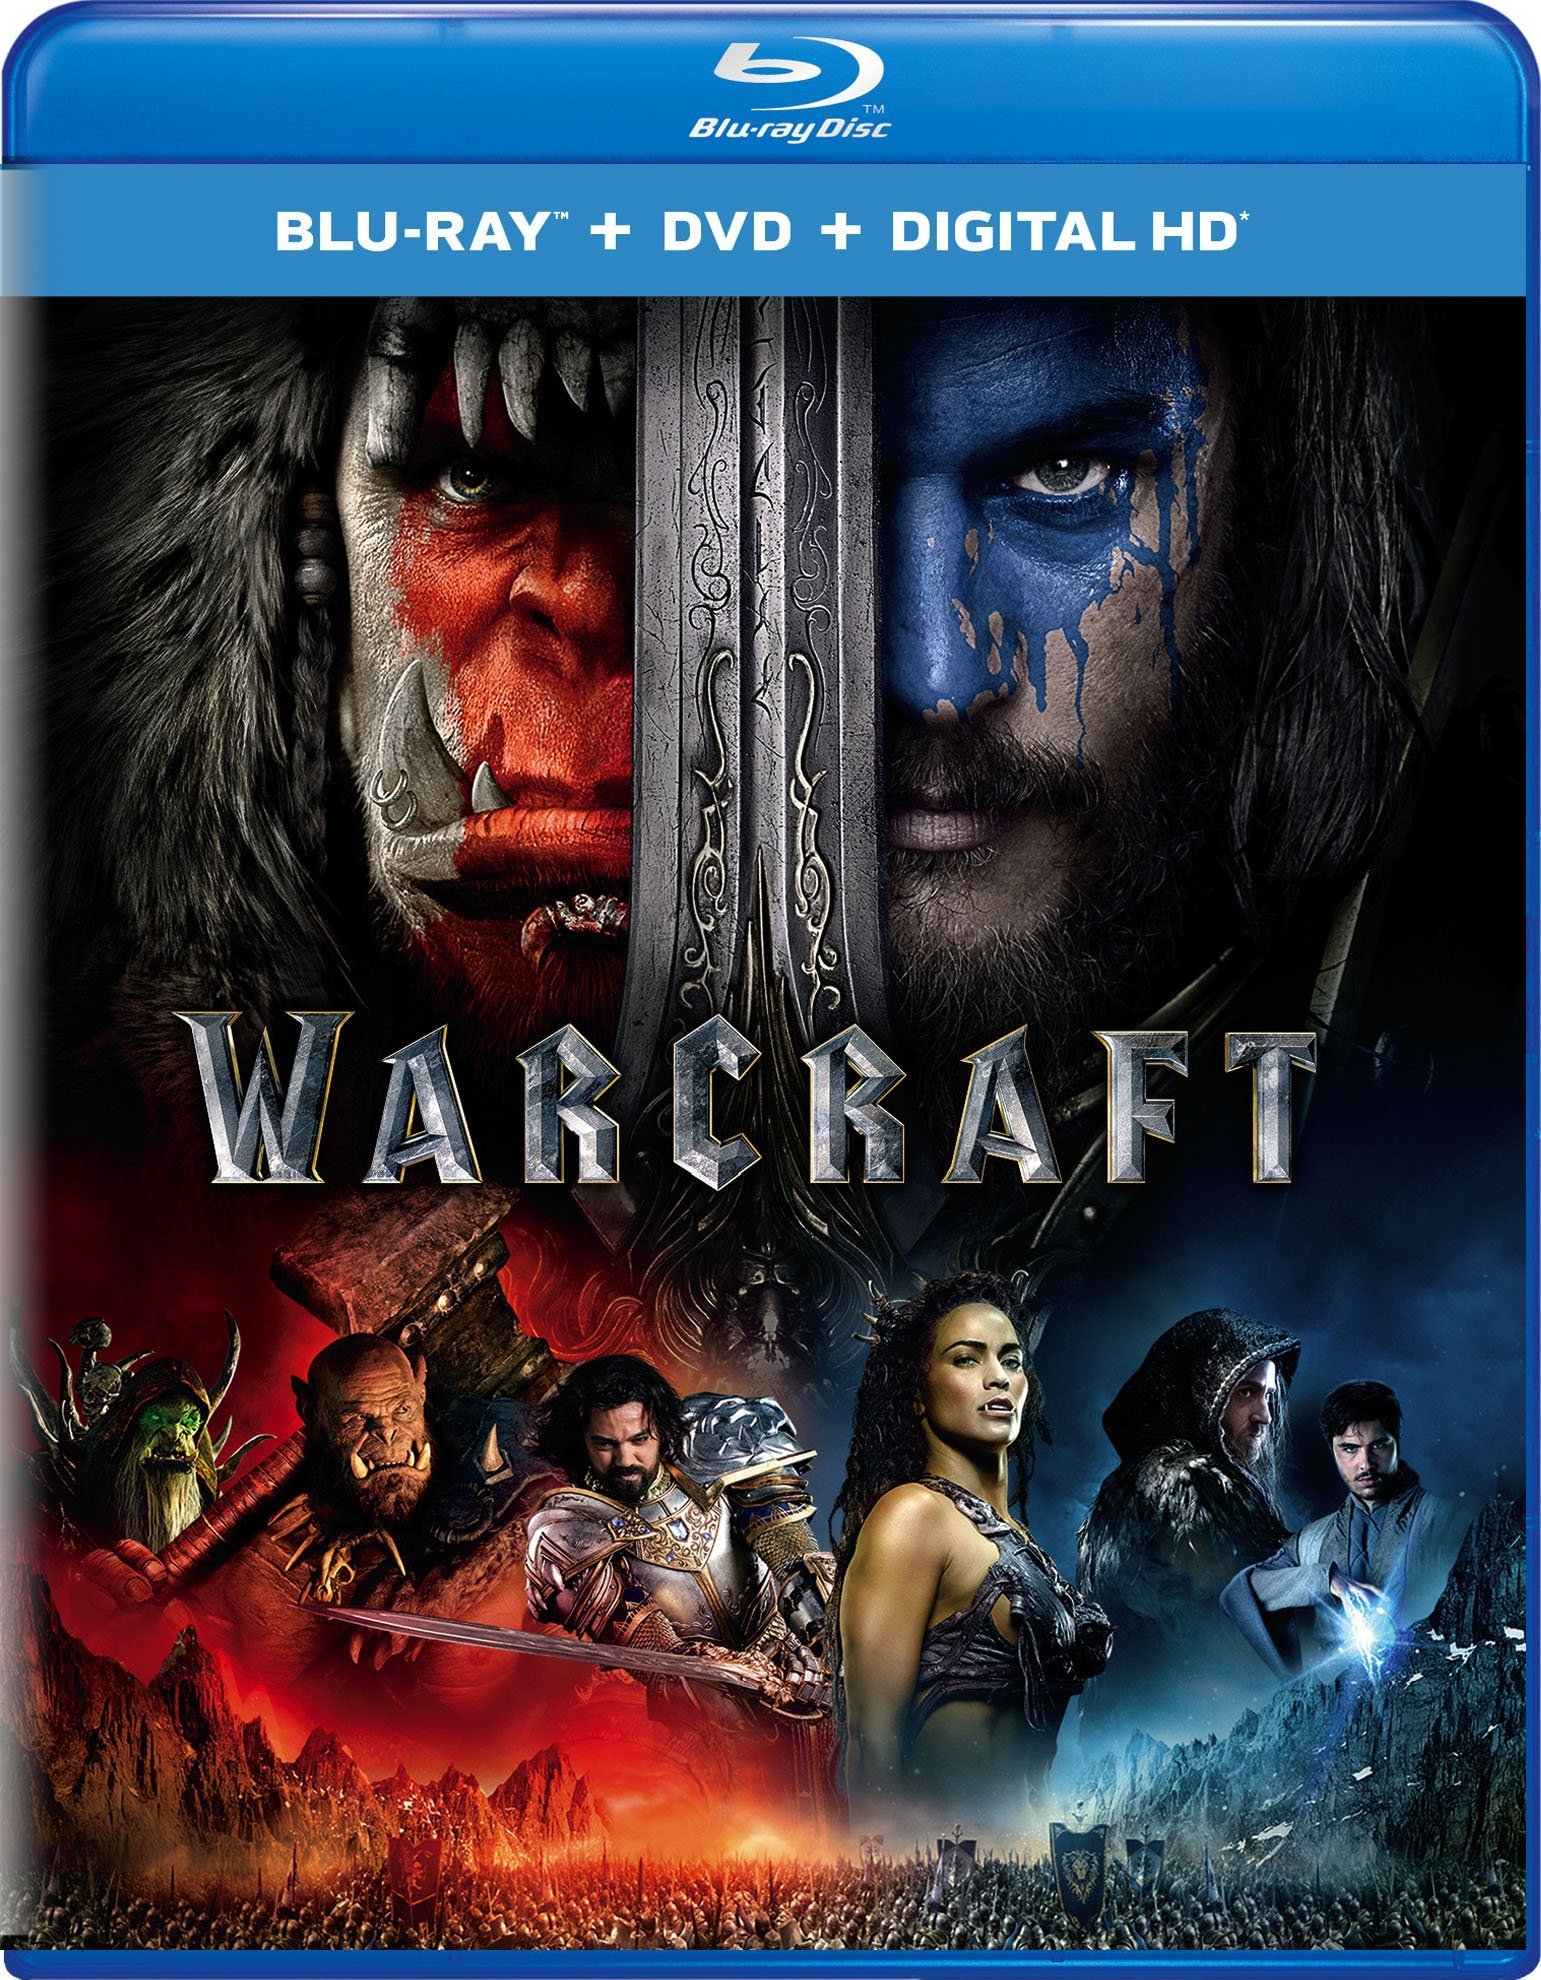 [魔兽].Warcraft.2016.TW.3D.BluRay.1080p.AVC.TrueHD.Atmos.7.1-TTG   43.51G-1.jpg